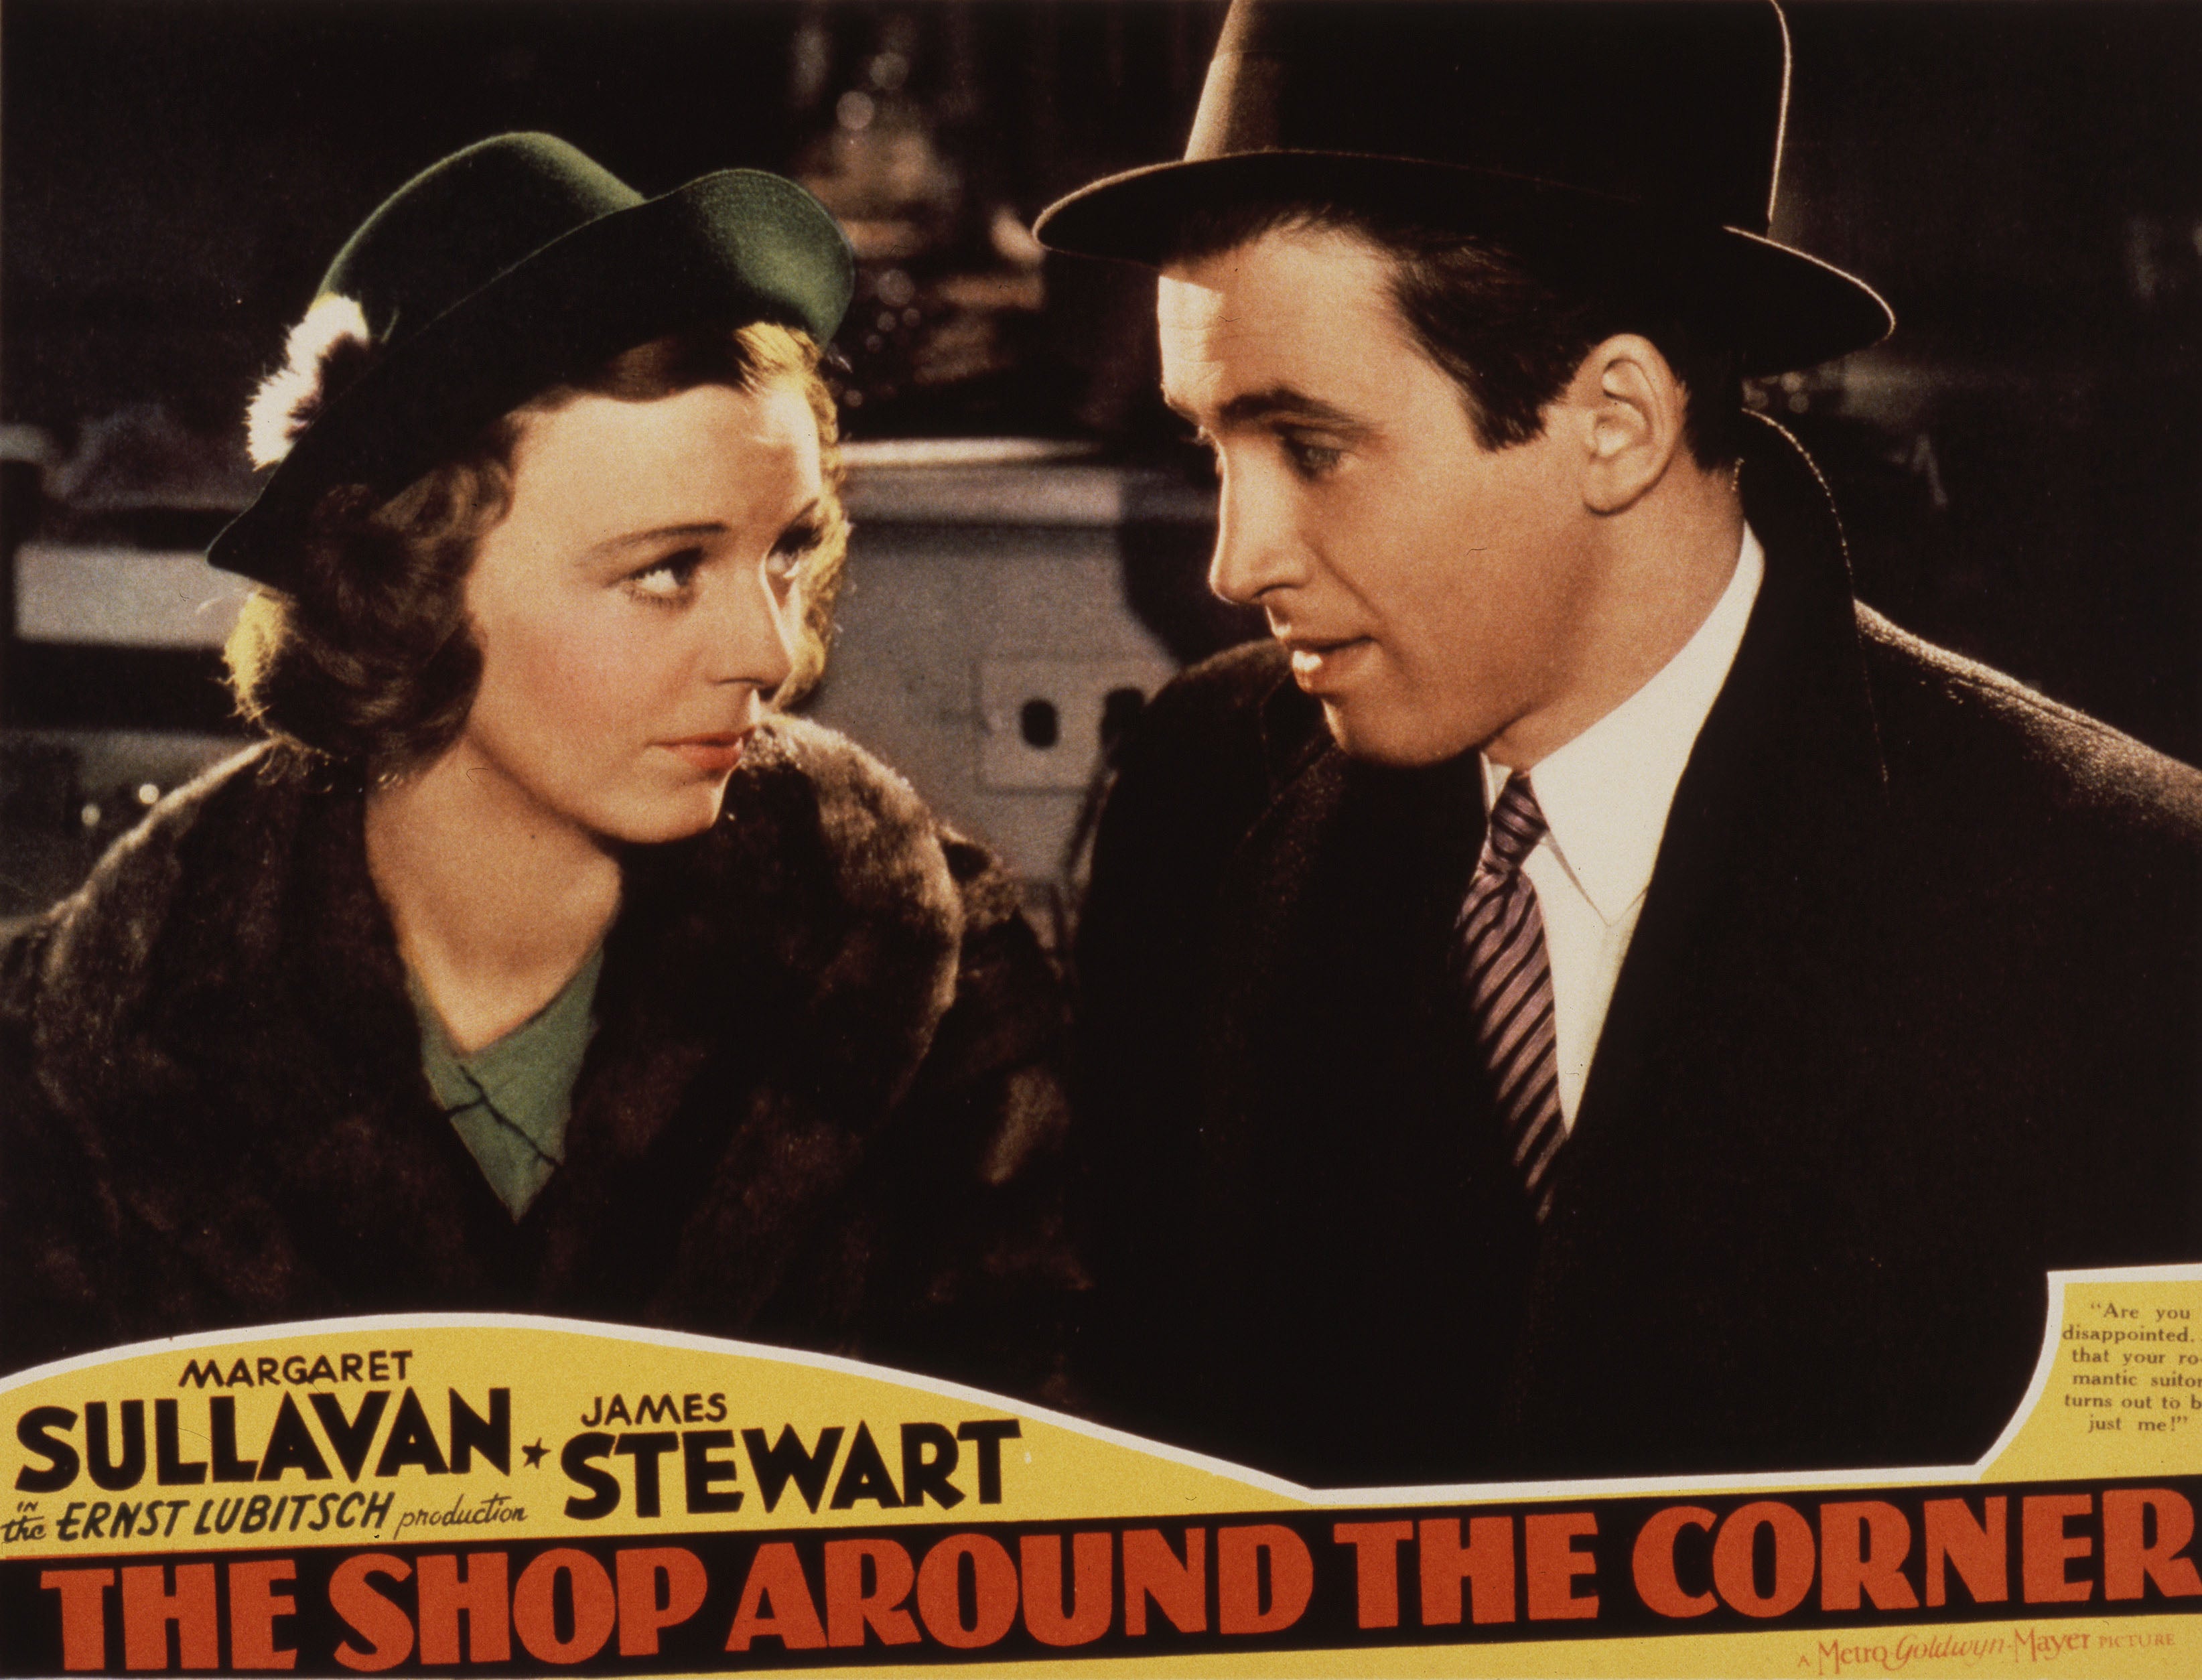 ‘The Shop Around the Corner’ starring Margaret Sullavan and James Stewart